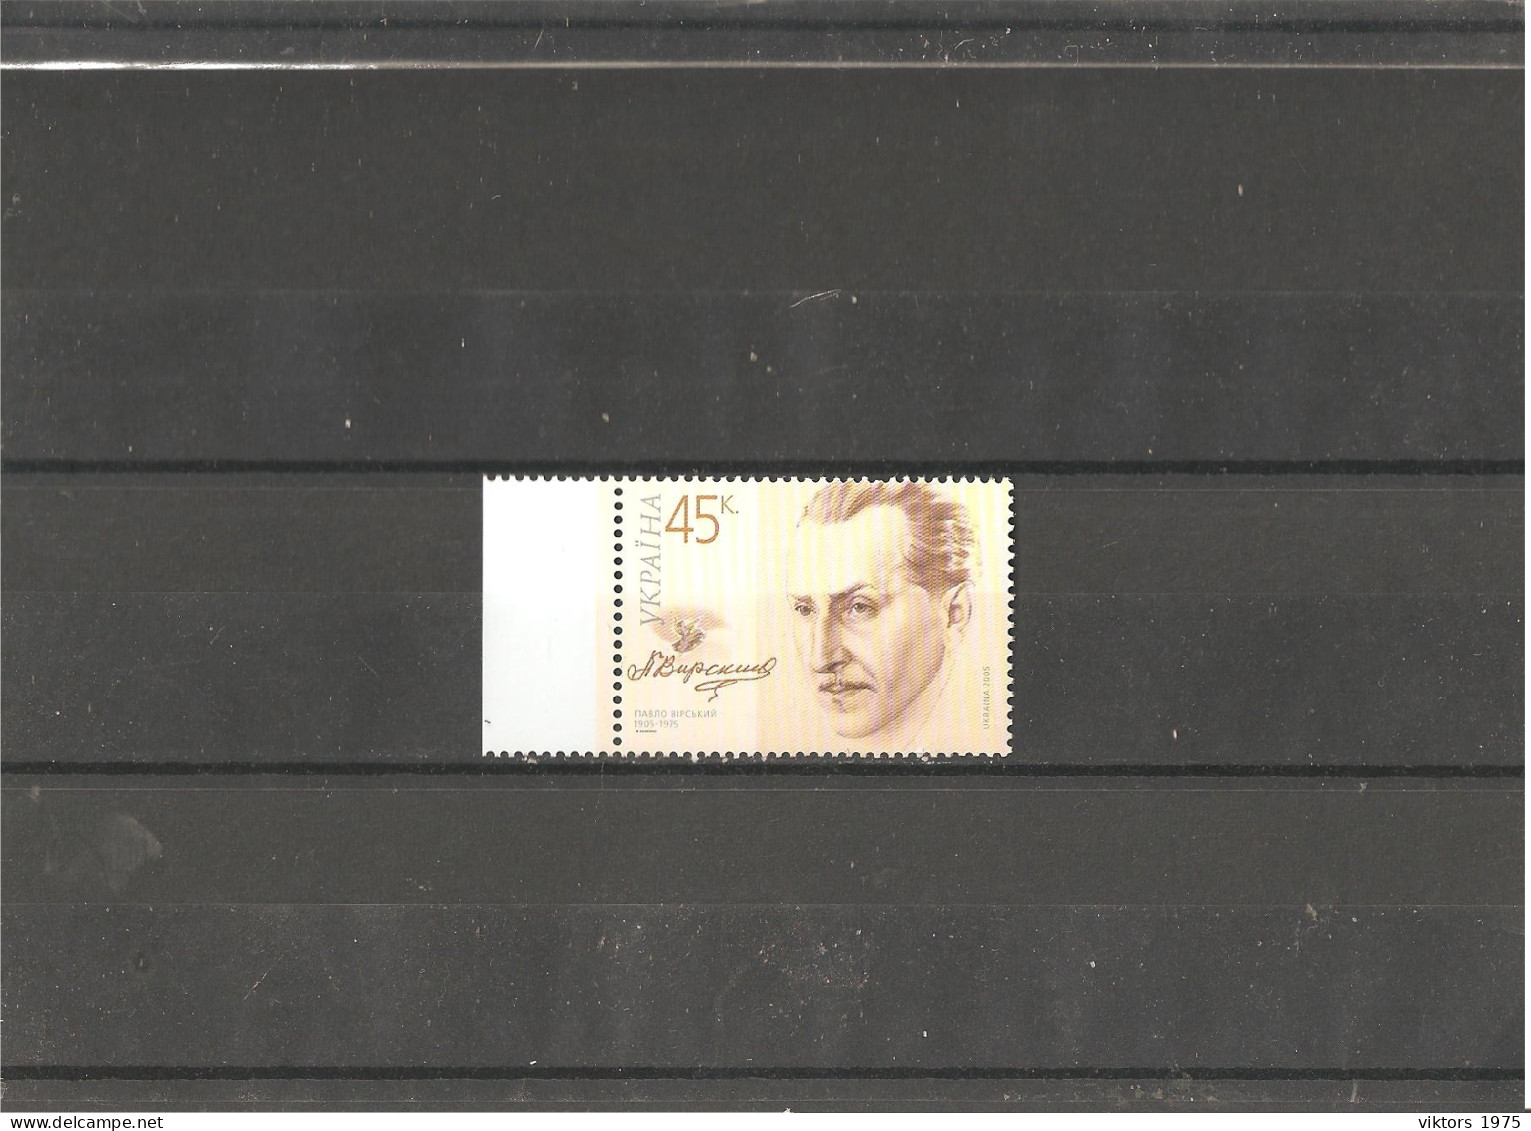 MNH Stamp Nr.696 In MICHEL Catalog - Ukraine